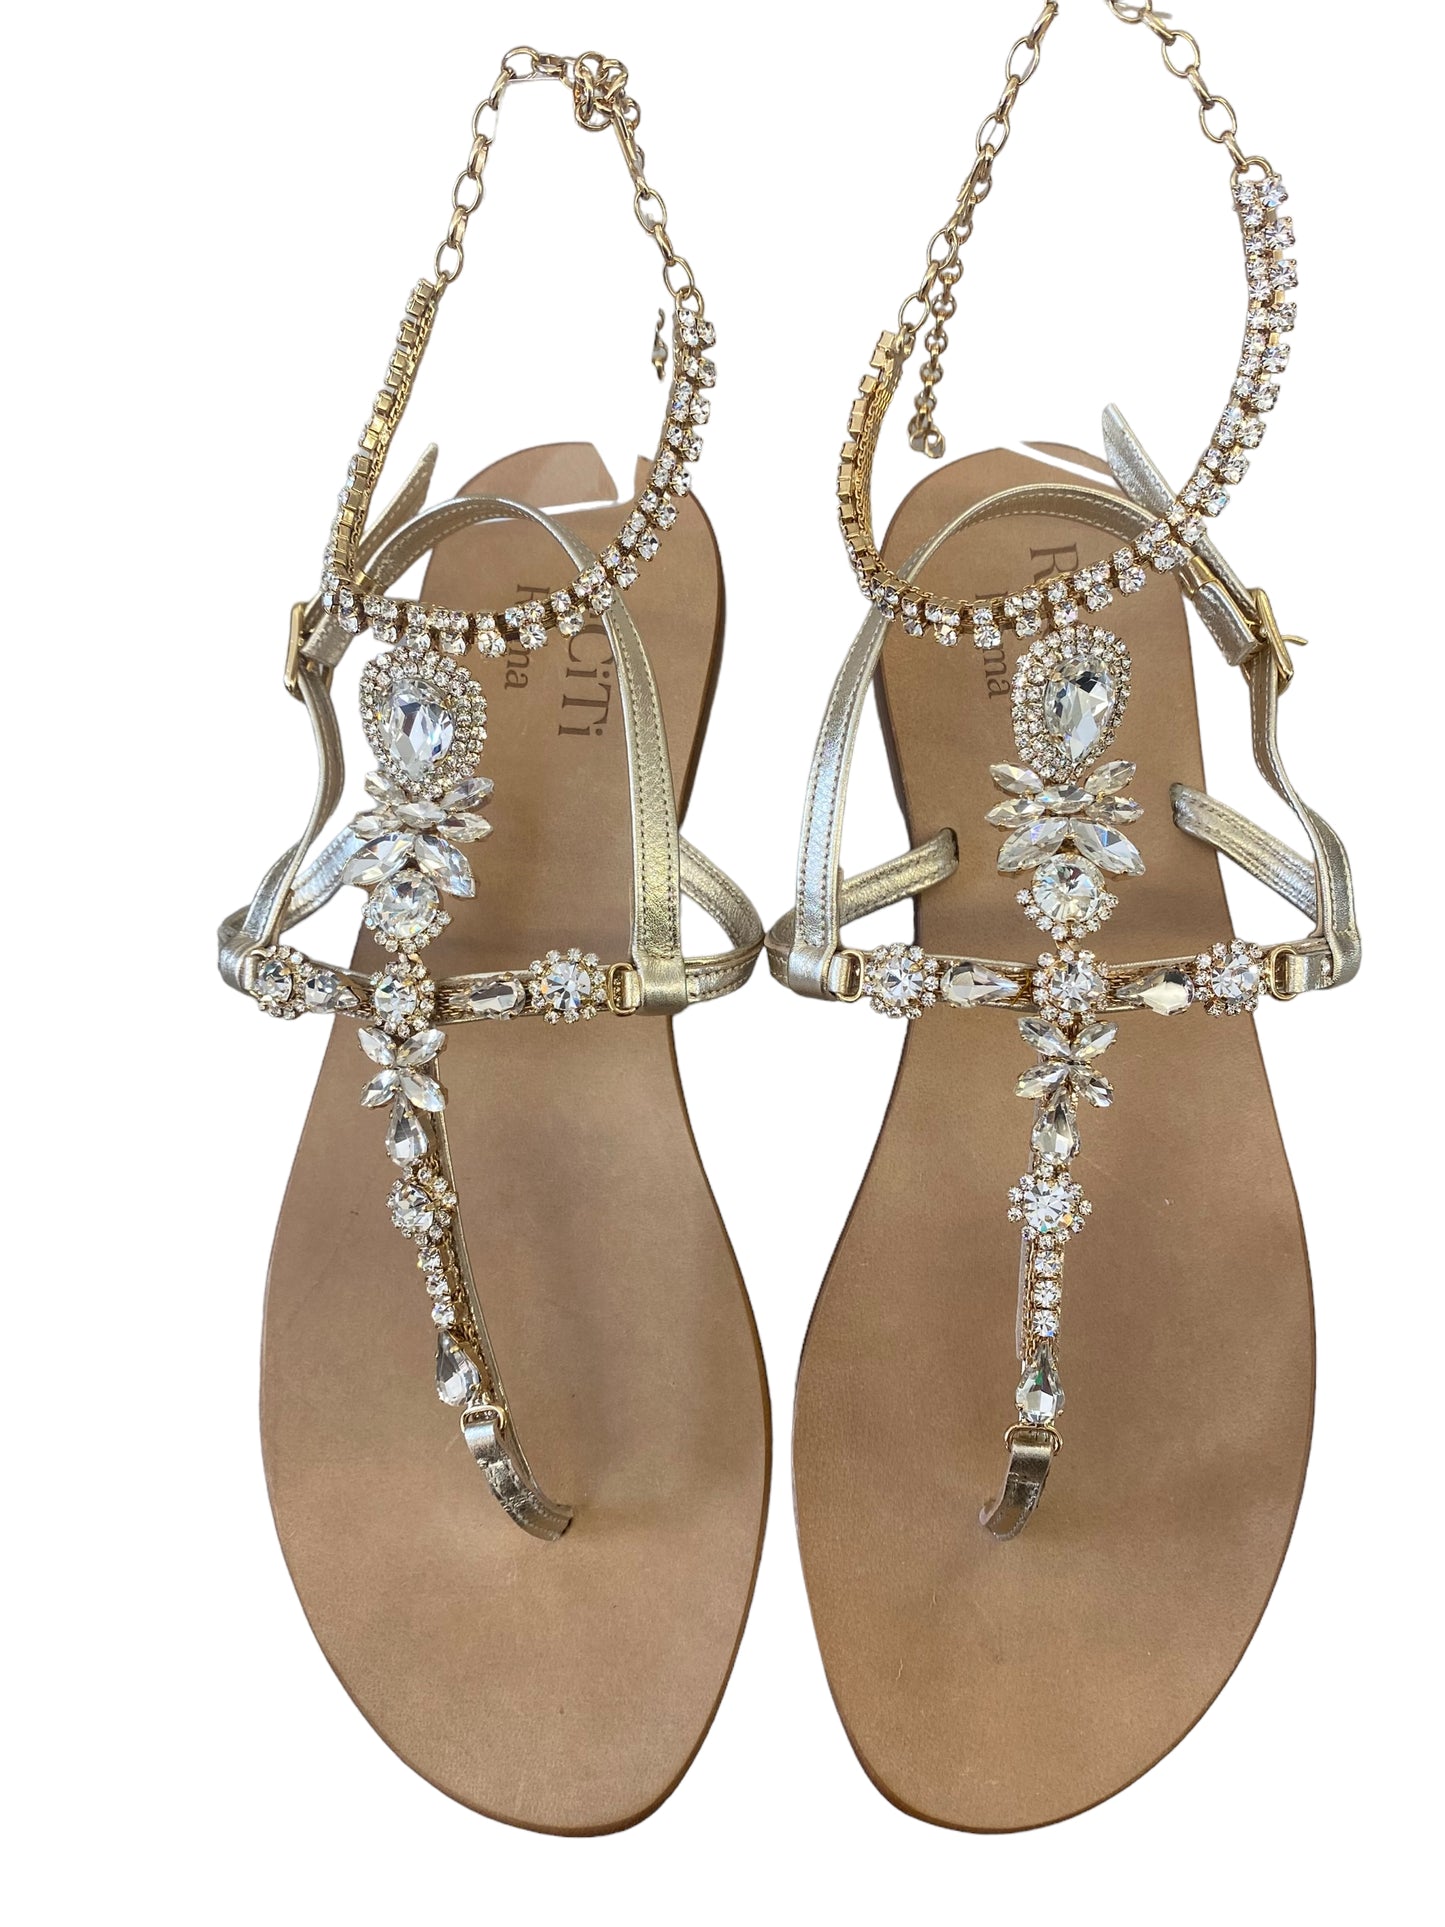 Aphrodite sandals